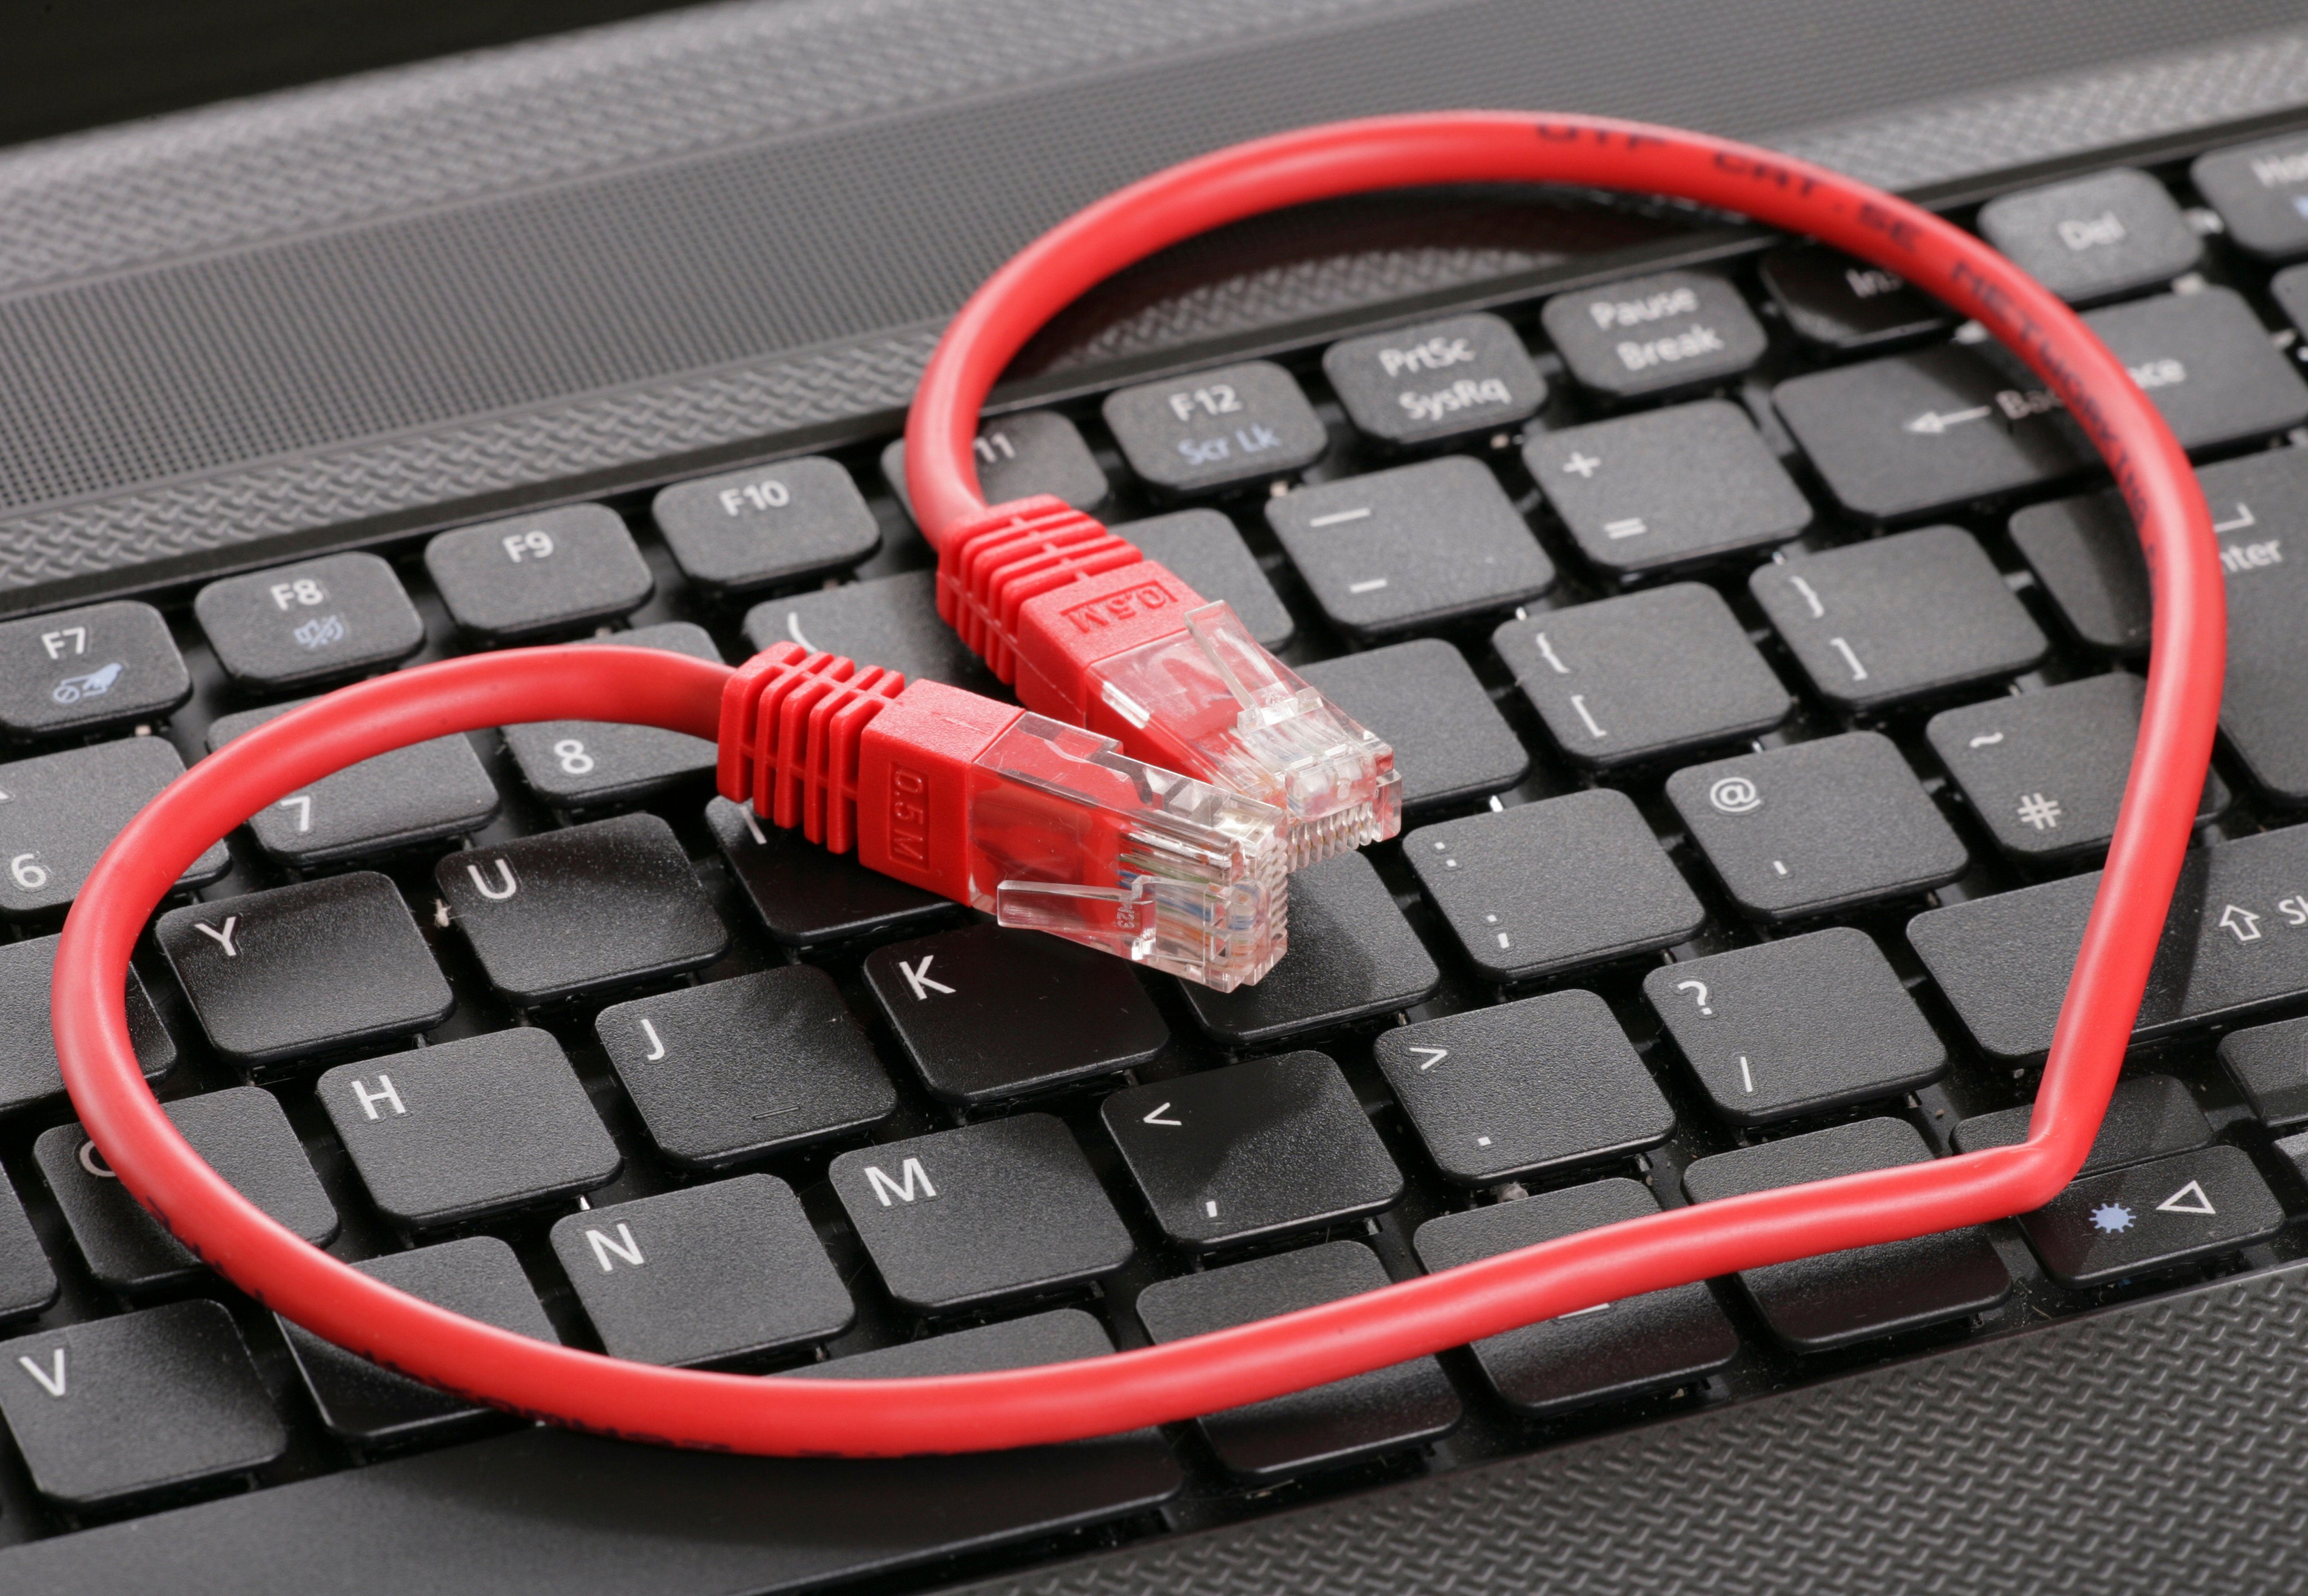 An elderly Hongkonger has fallen victim to an online romance scam. Photo: Shutterstock